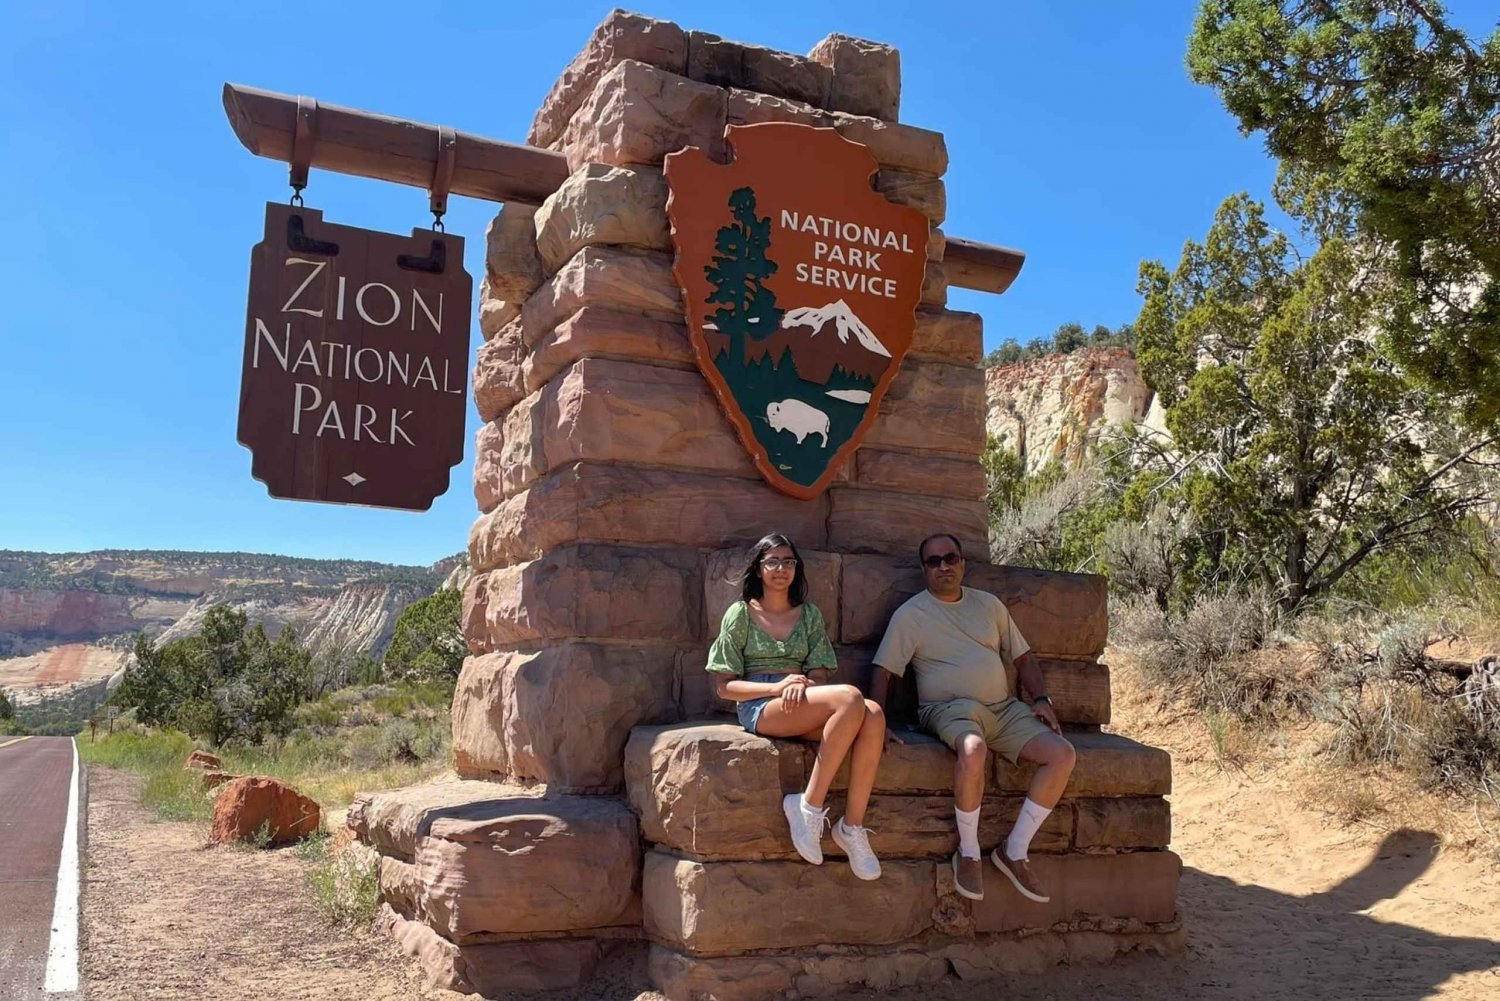 Von Las Vegas aus: Bryce Canyon & Zion National Park Tagestour